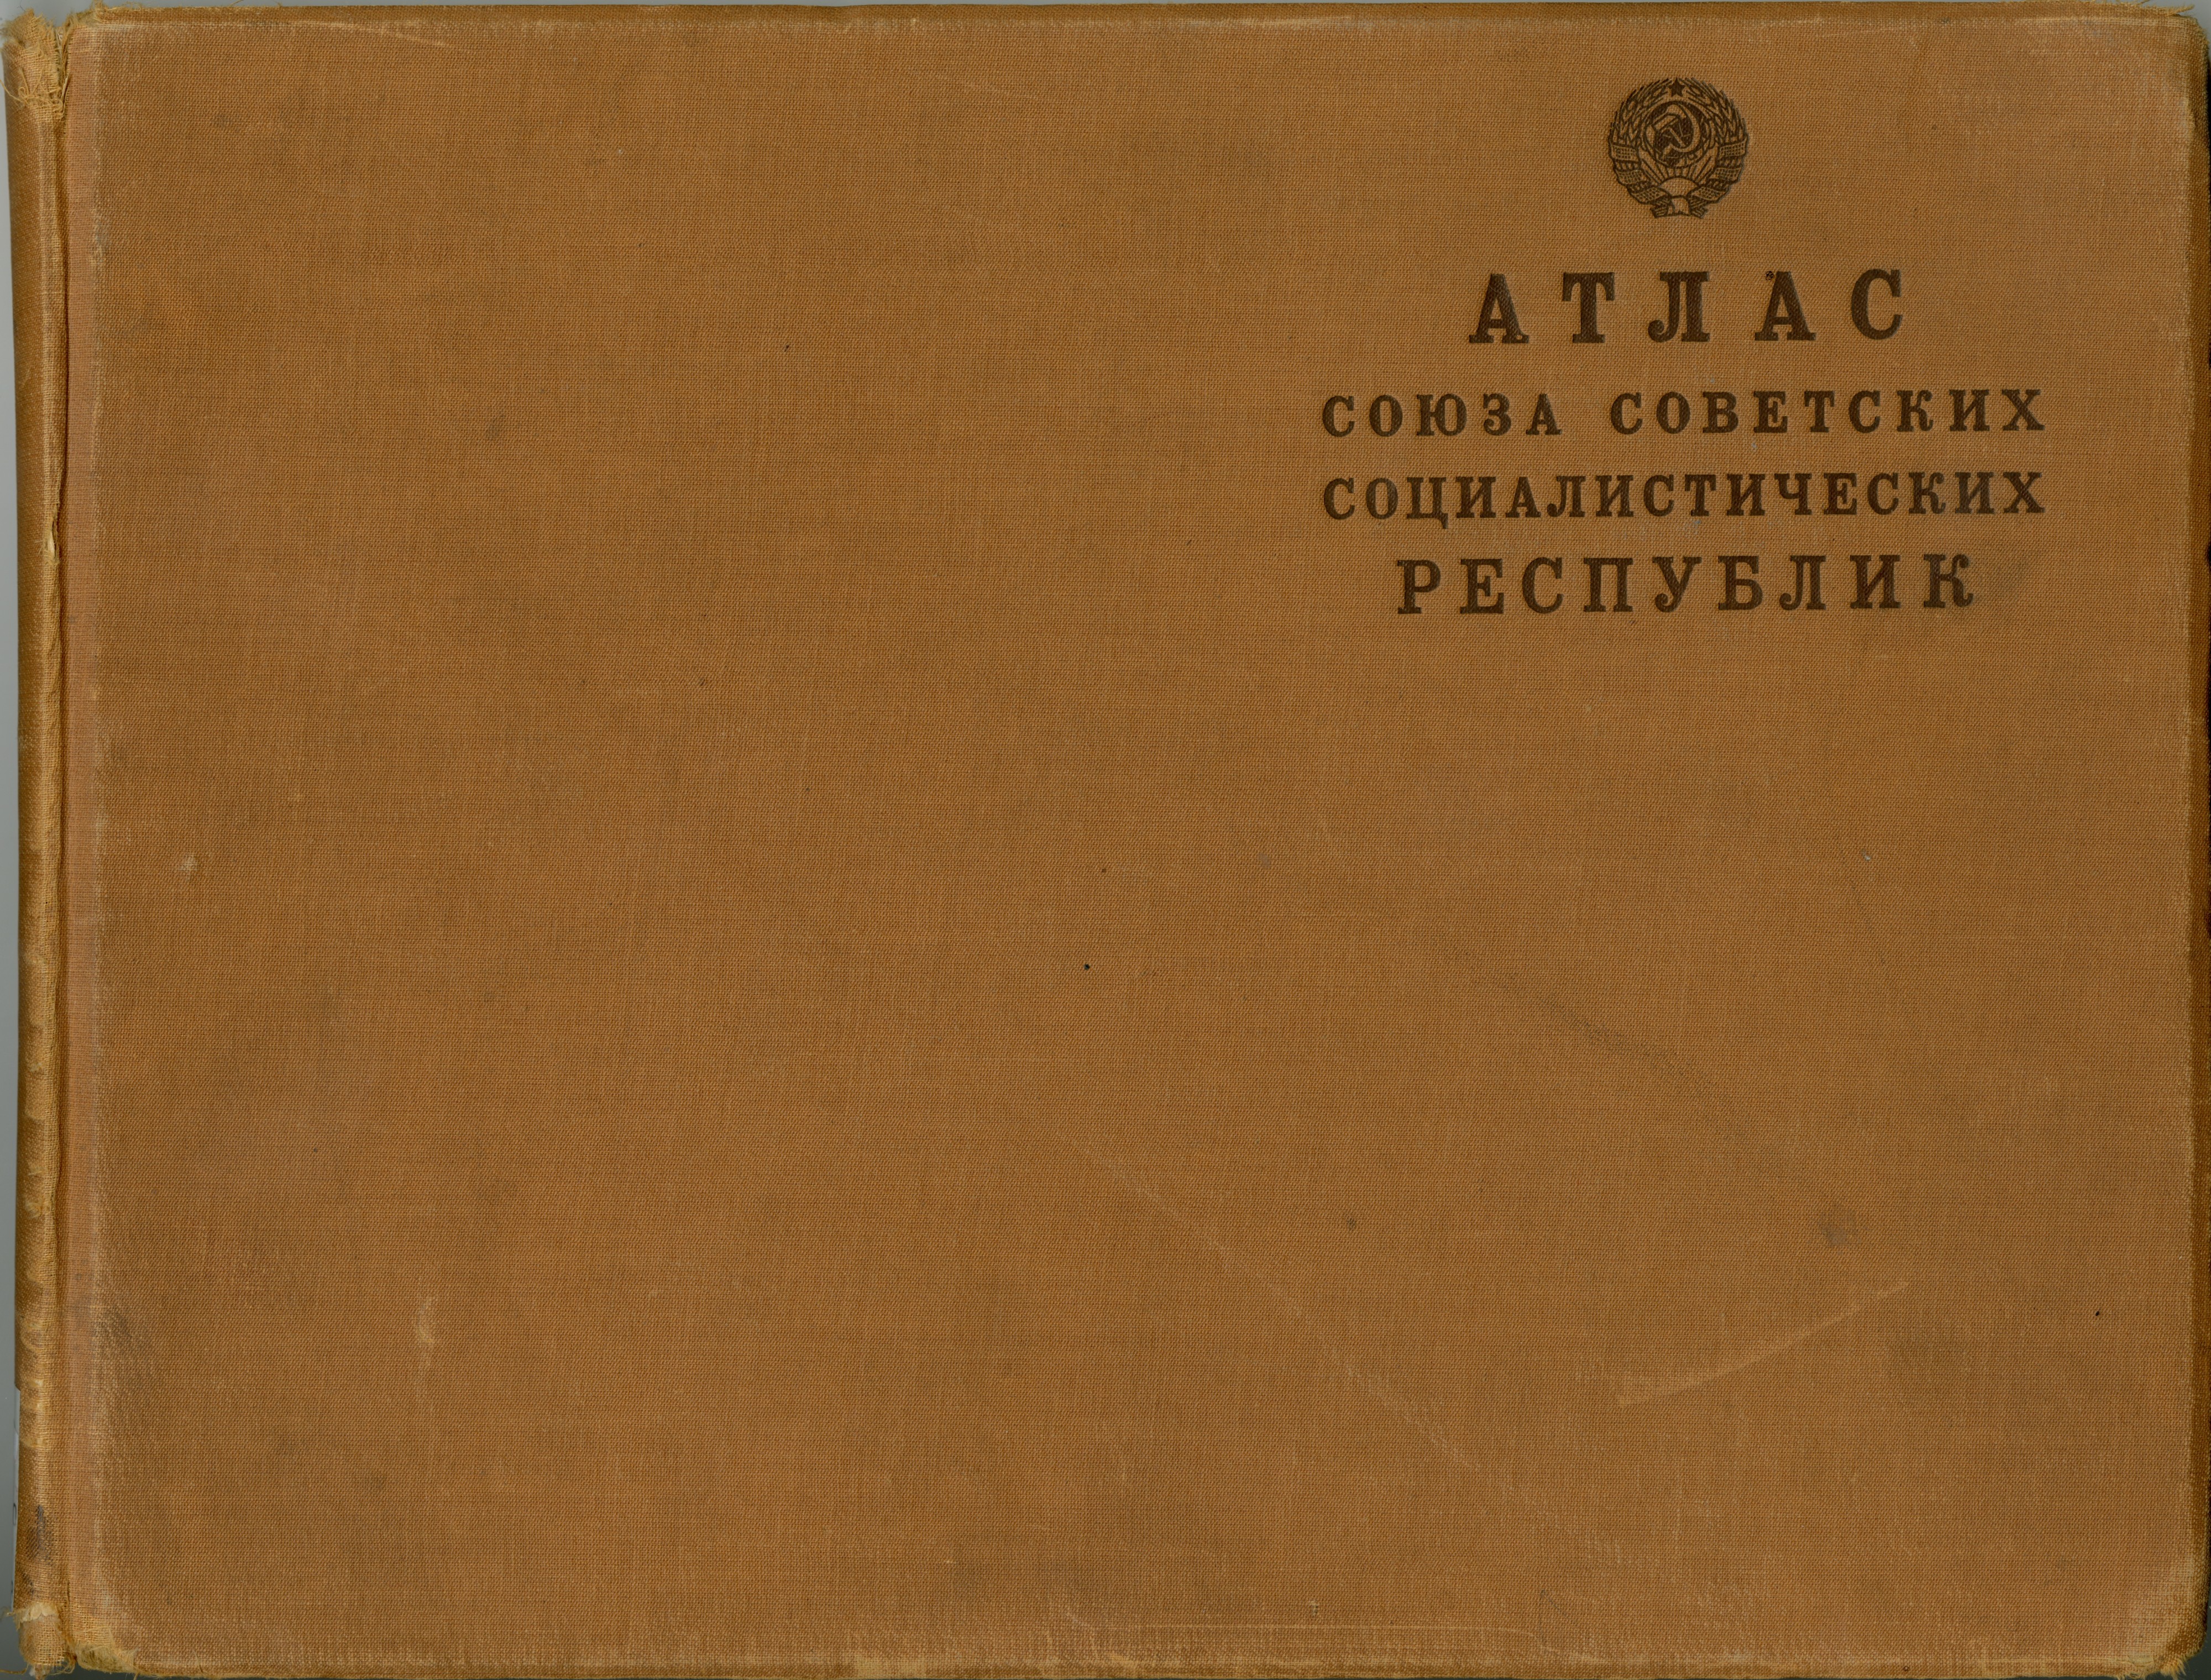 Атлас Союза Советских Социалистических Республик 1928 - Front cover